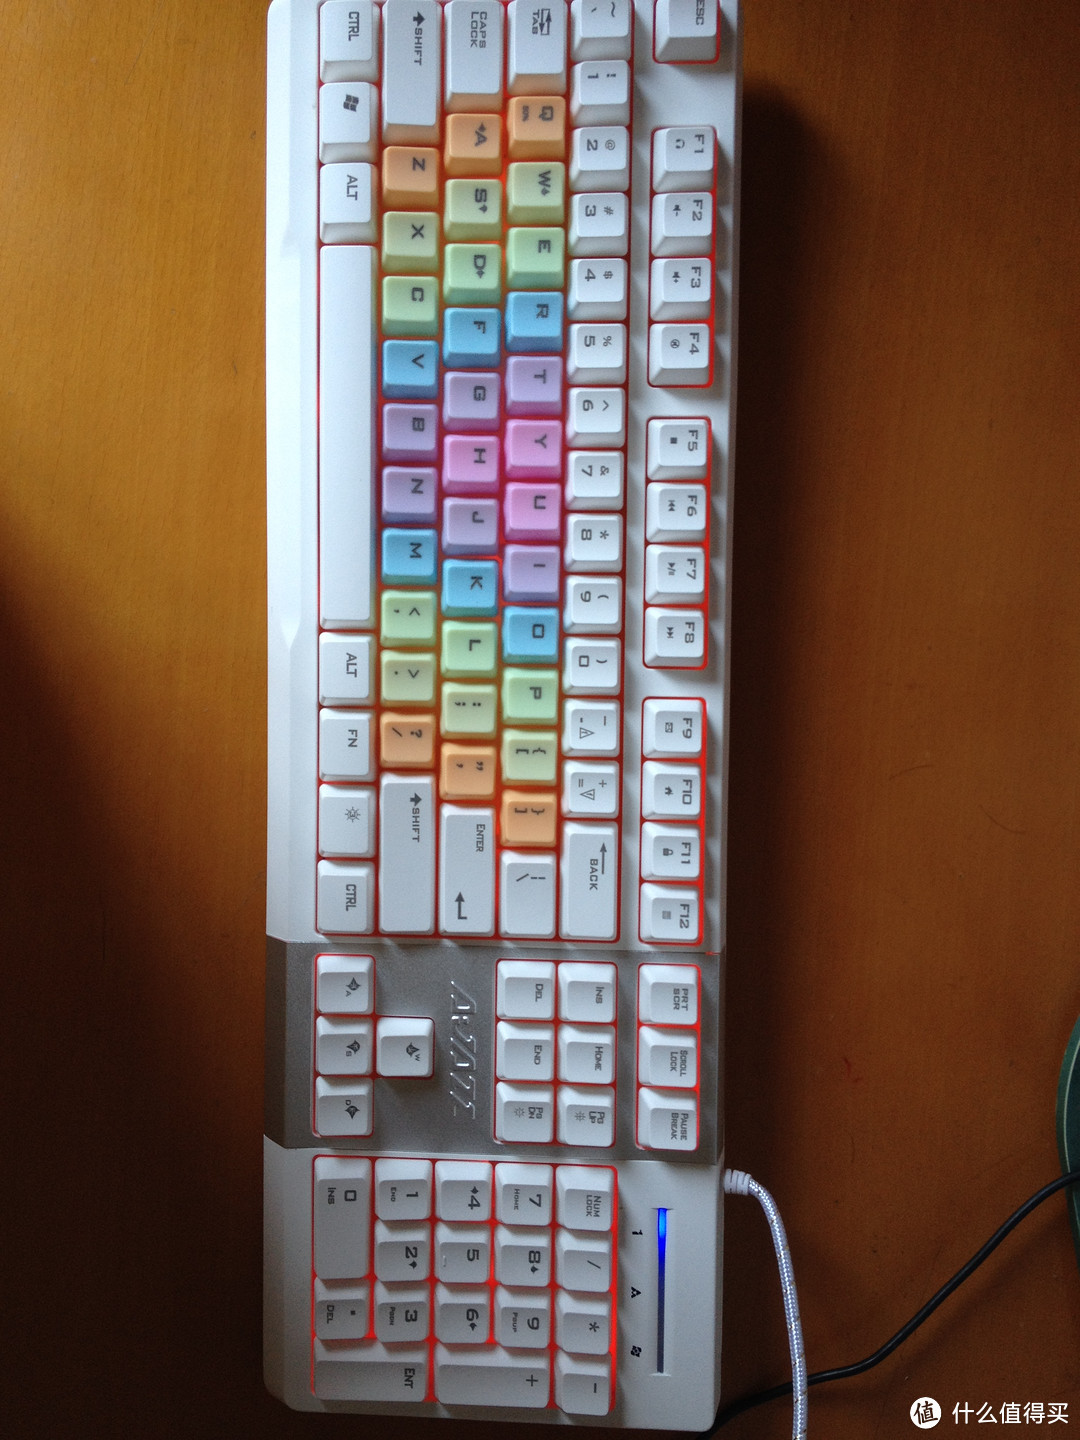 十九分之一——AJazz 黑爵 AK10 英魂之刃 键盘 白色彩虹版